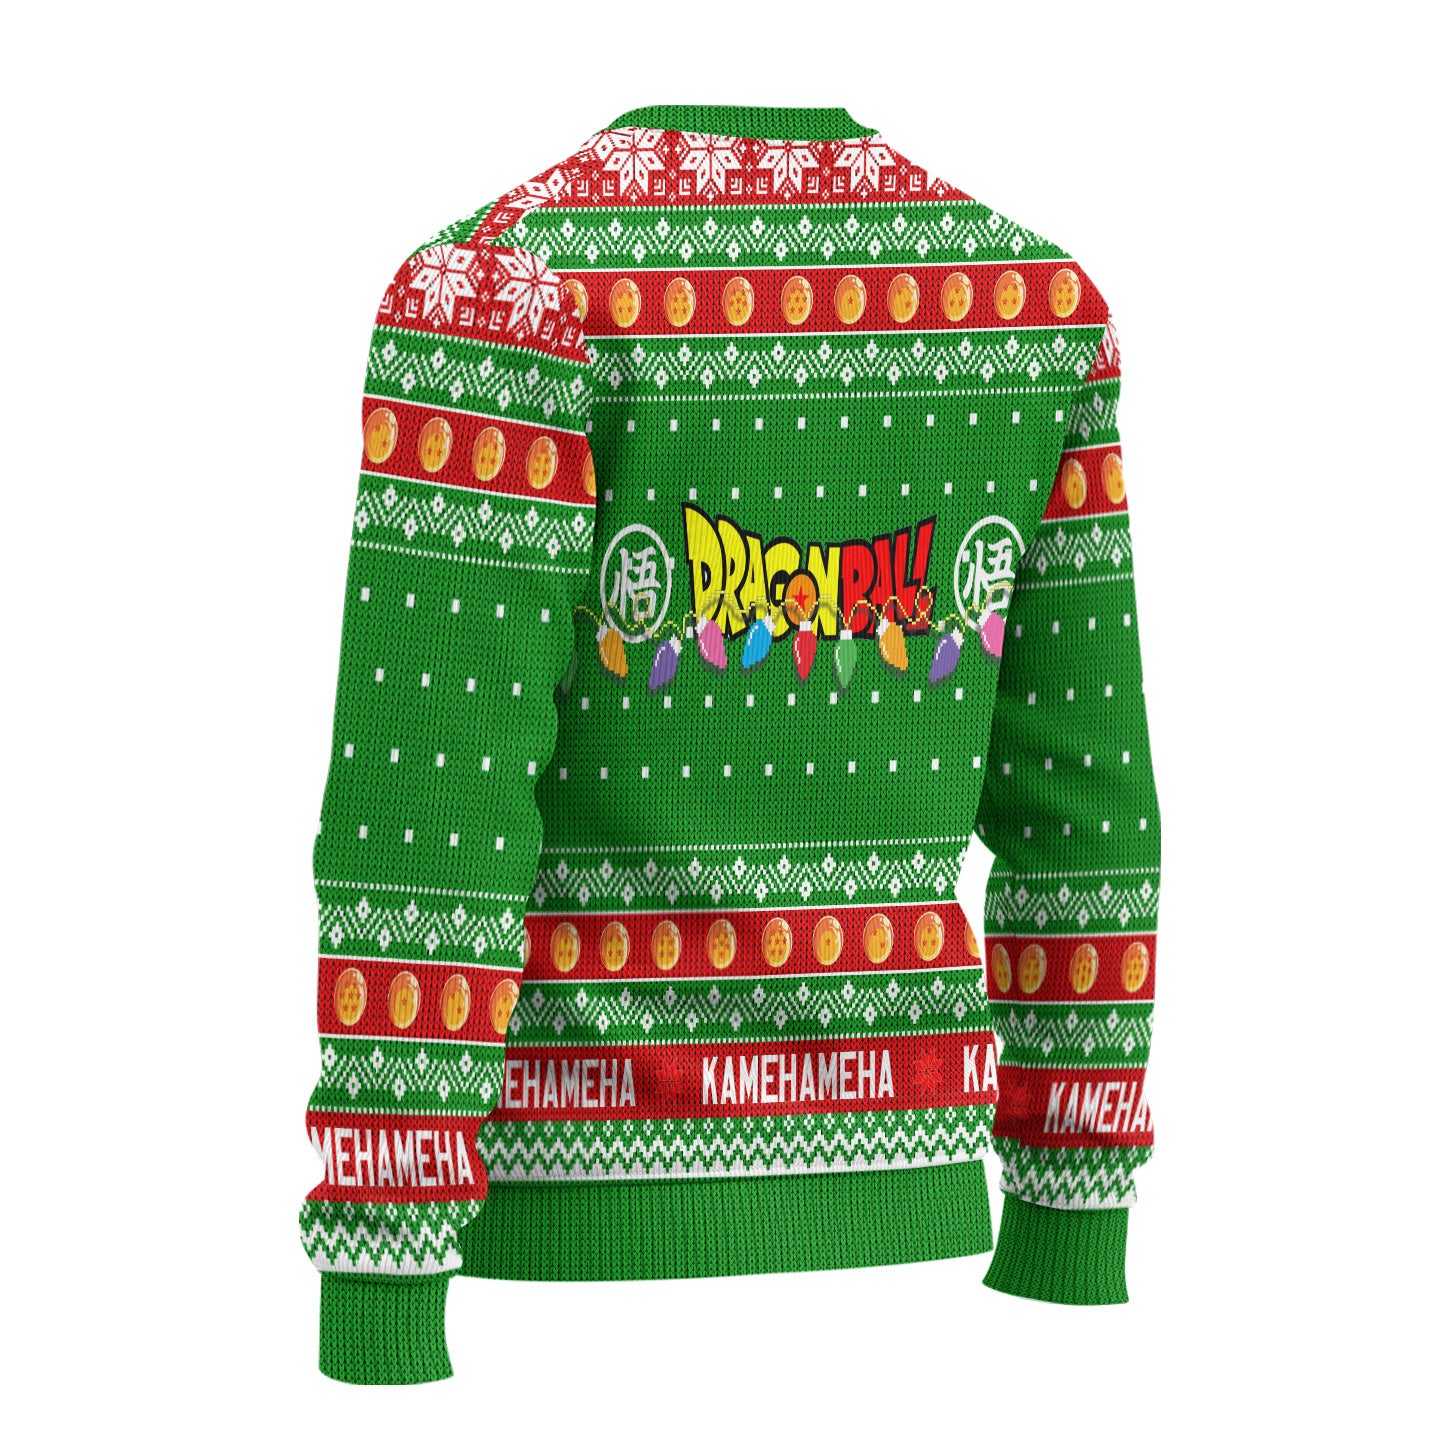 Goku x Gohan x Chi Chi Dragon Ball Anime Ugly Christmas Sweater New Design